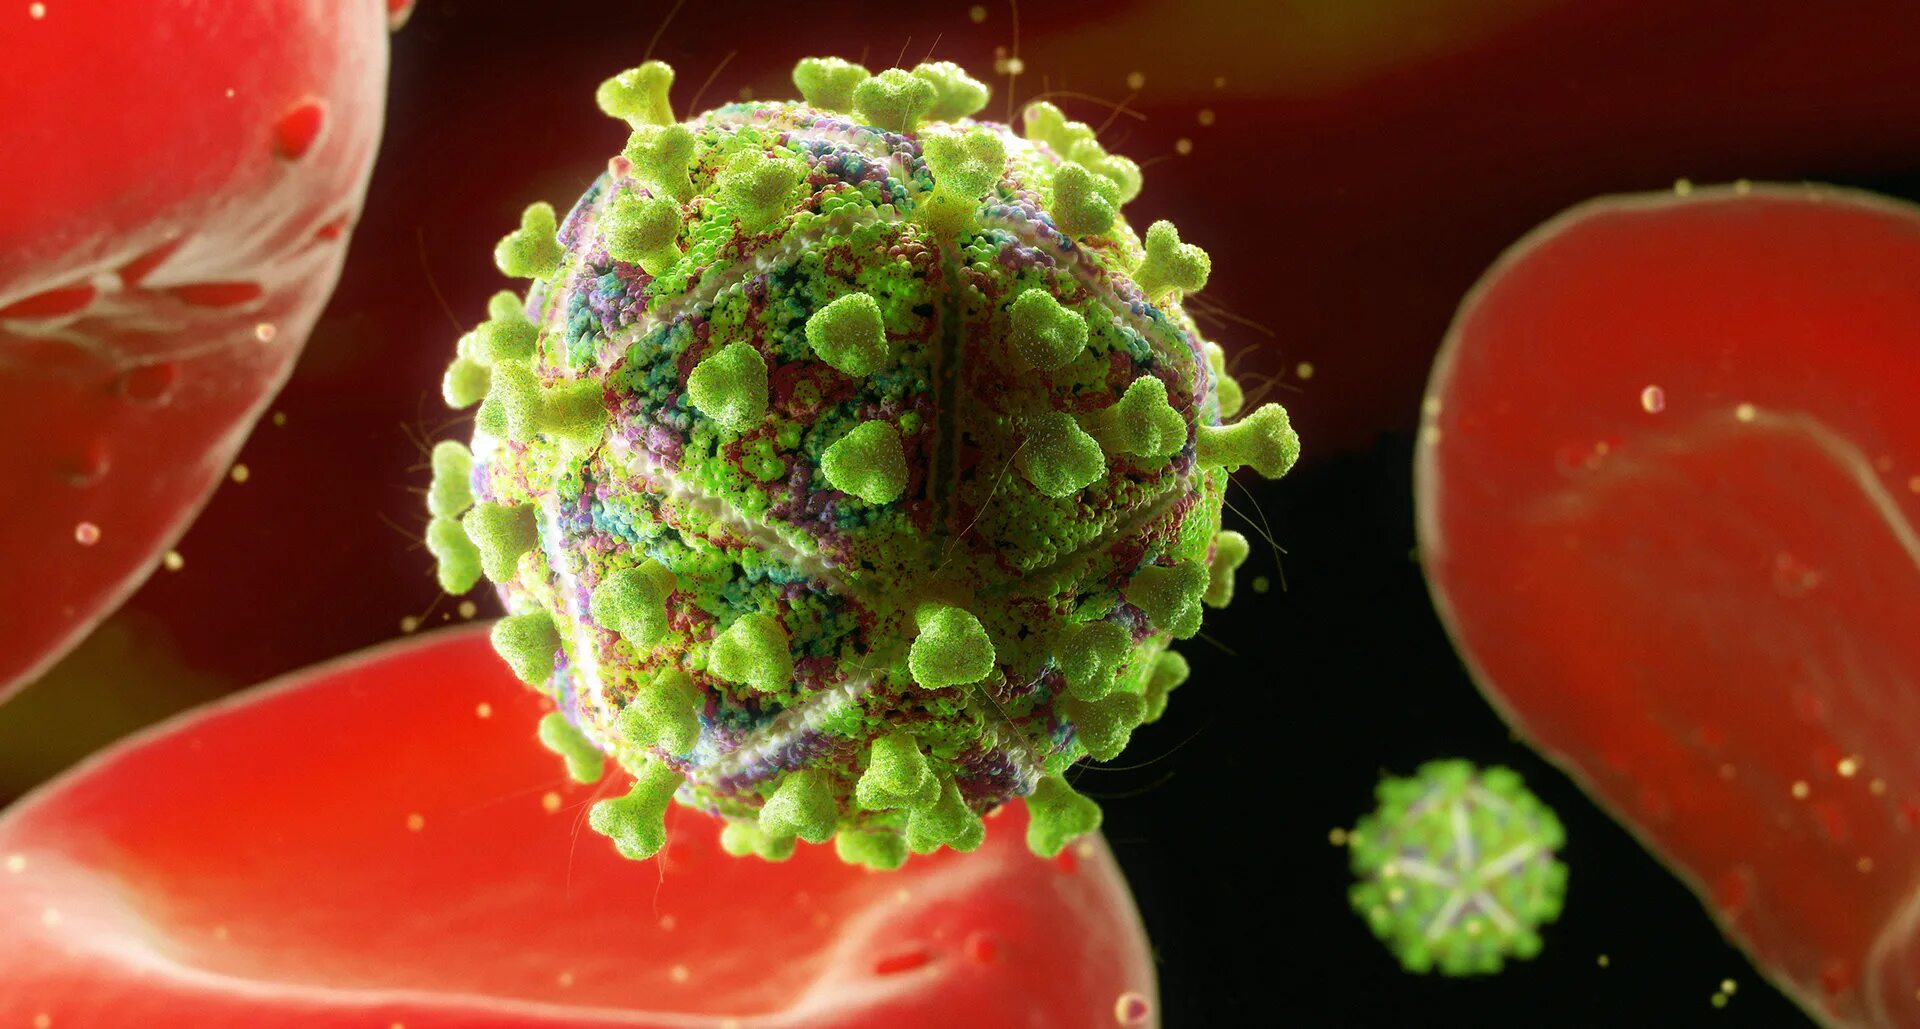 СПИД бактерия. Вирус СПИДА. ВИЧ фото вируса. Human immunodeficiency virus